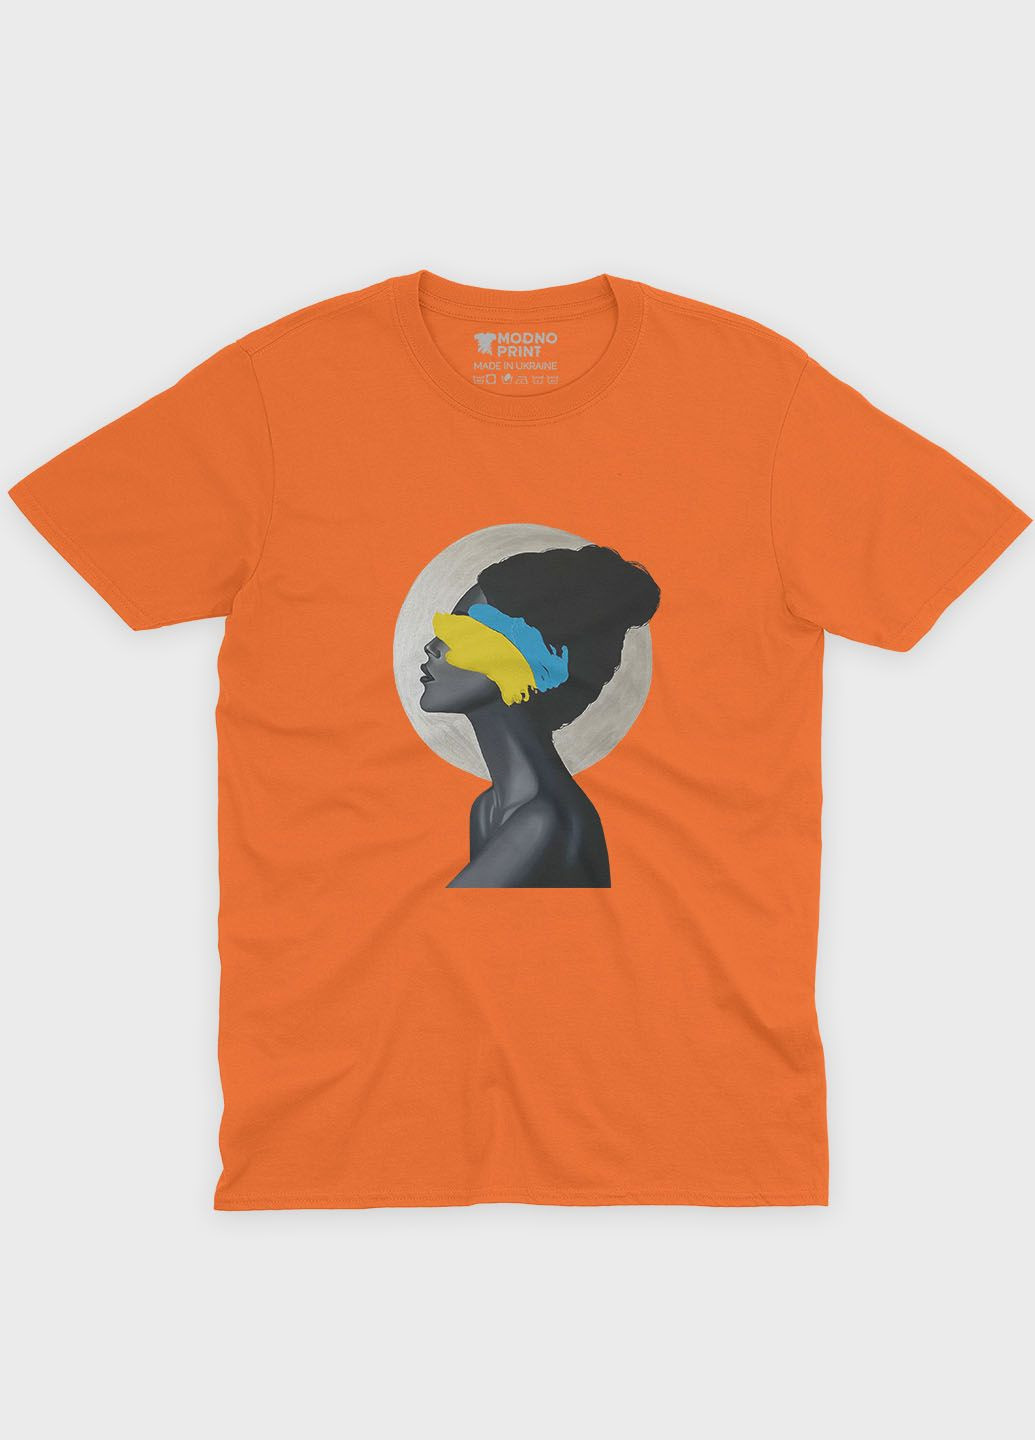 Оранжевая демисезонная футболка для мальчика с патриотическим принтом (ts001-3-ora-005-1-063-b) Modno